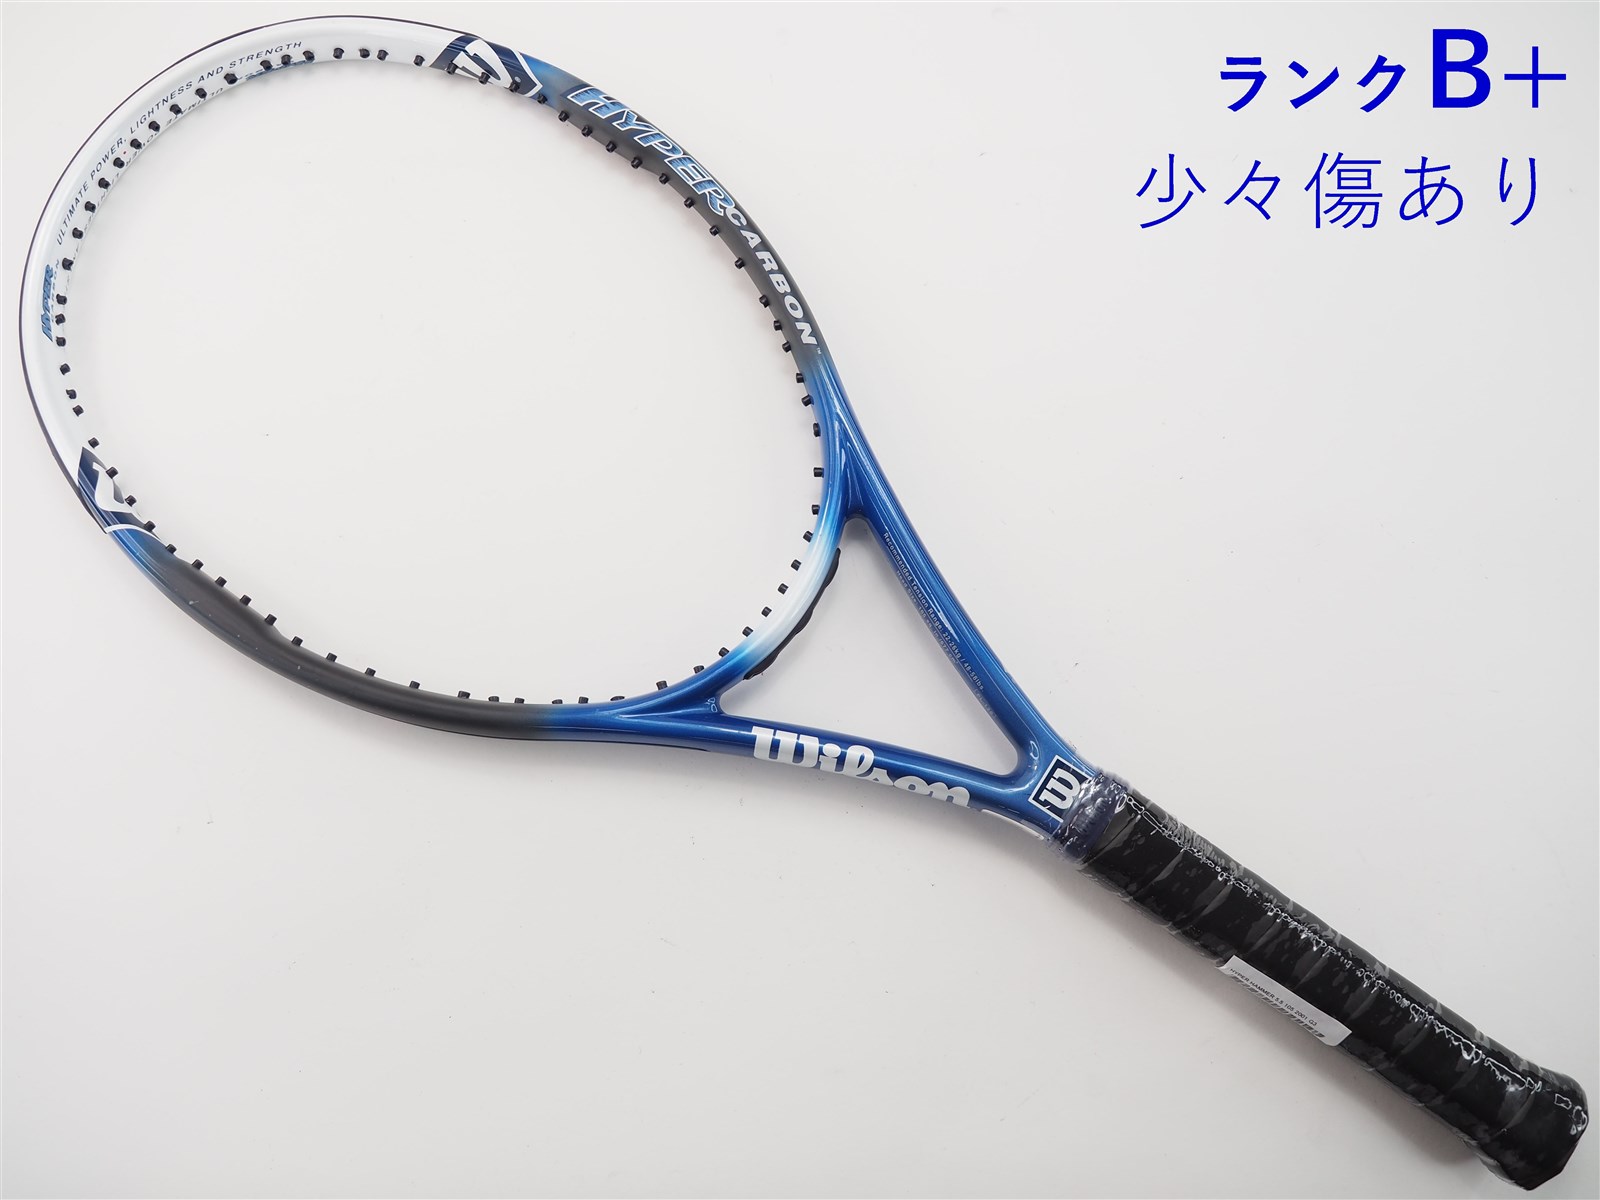 テニスラケット ウィルソンハイパープロスタッフ5.3 105 - ラケット 